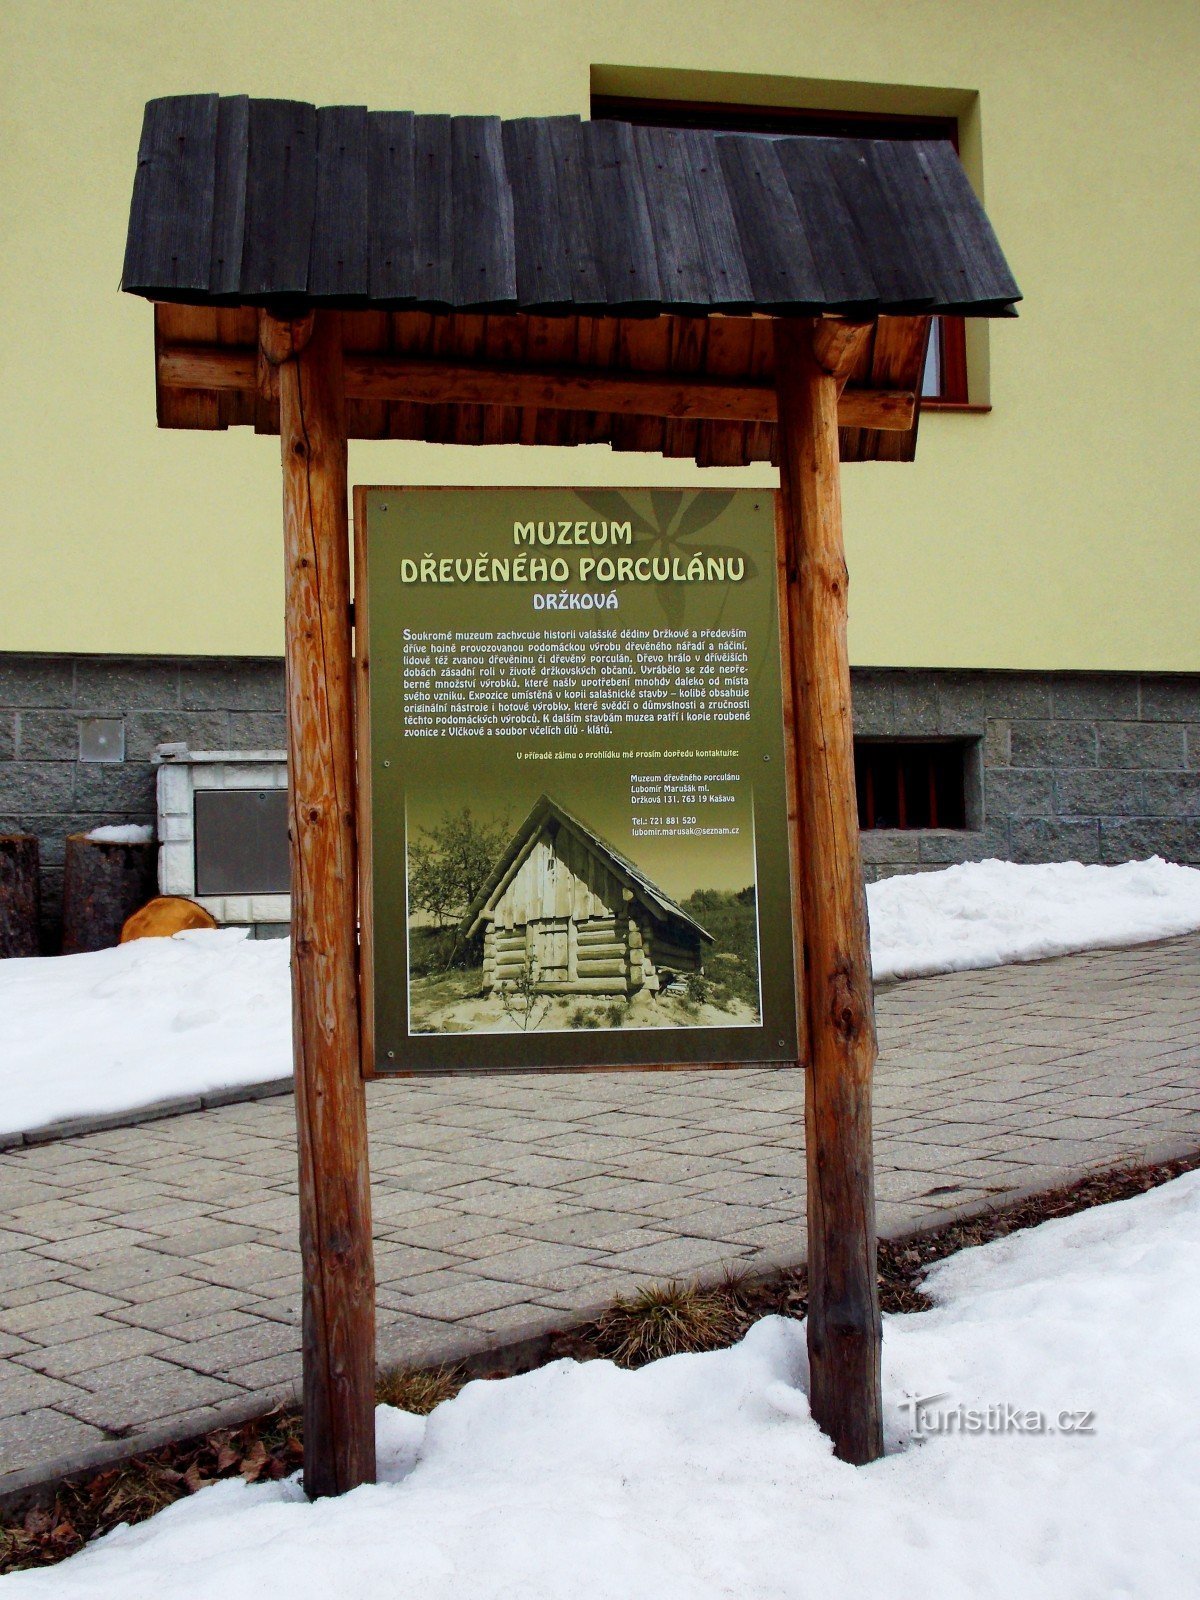 Till träporslinsmuseet i Držková nära Zlín